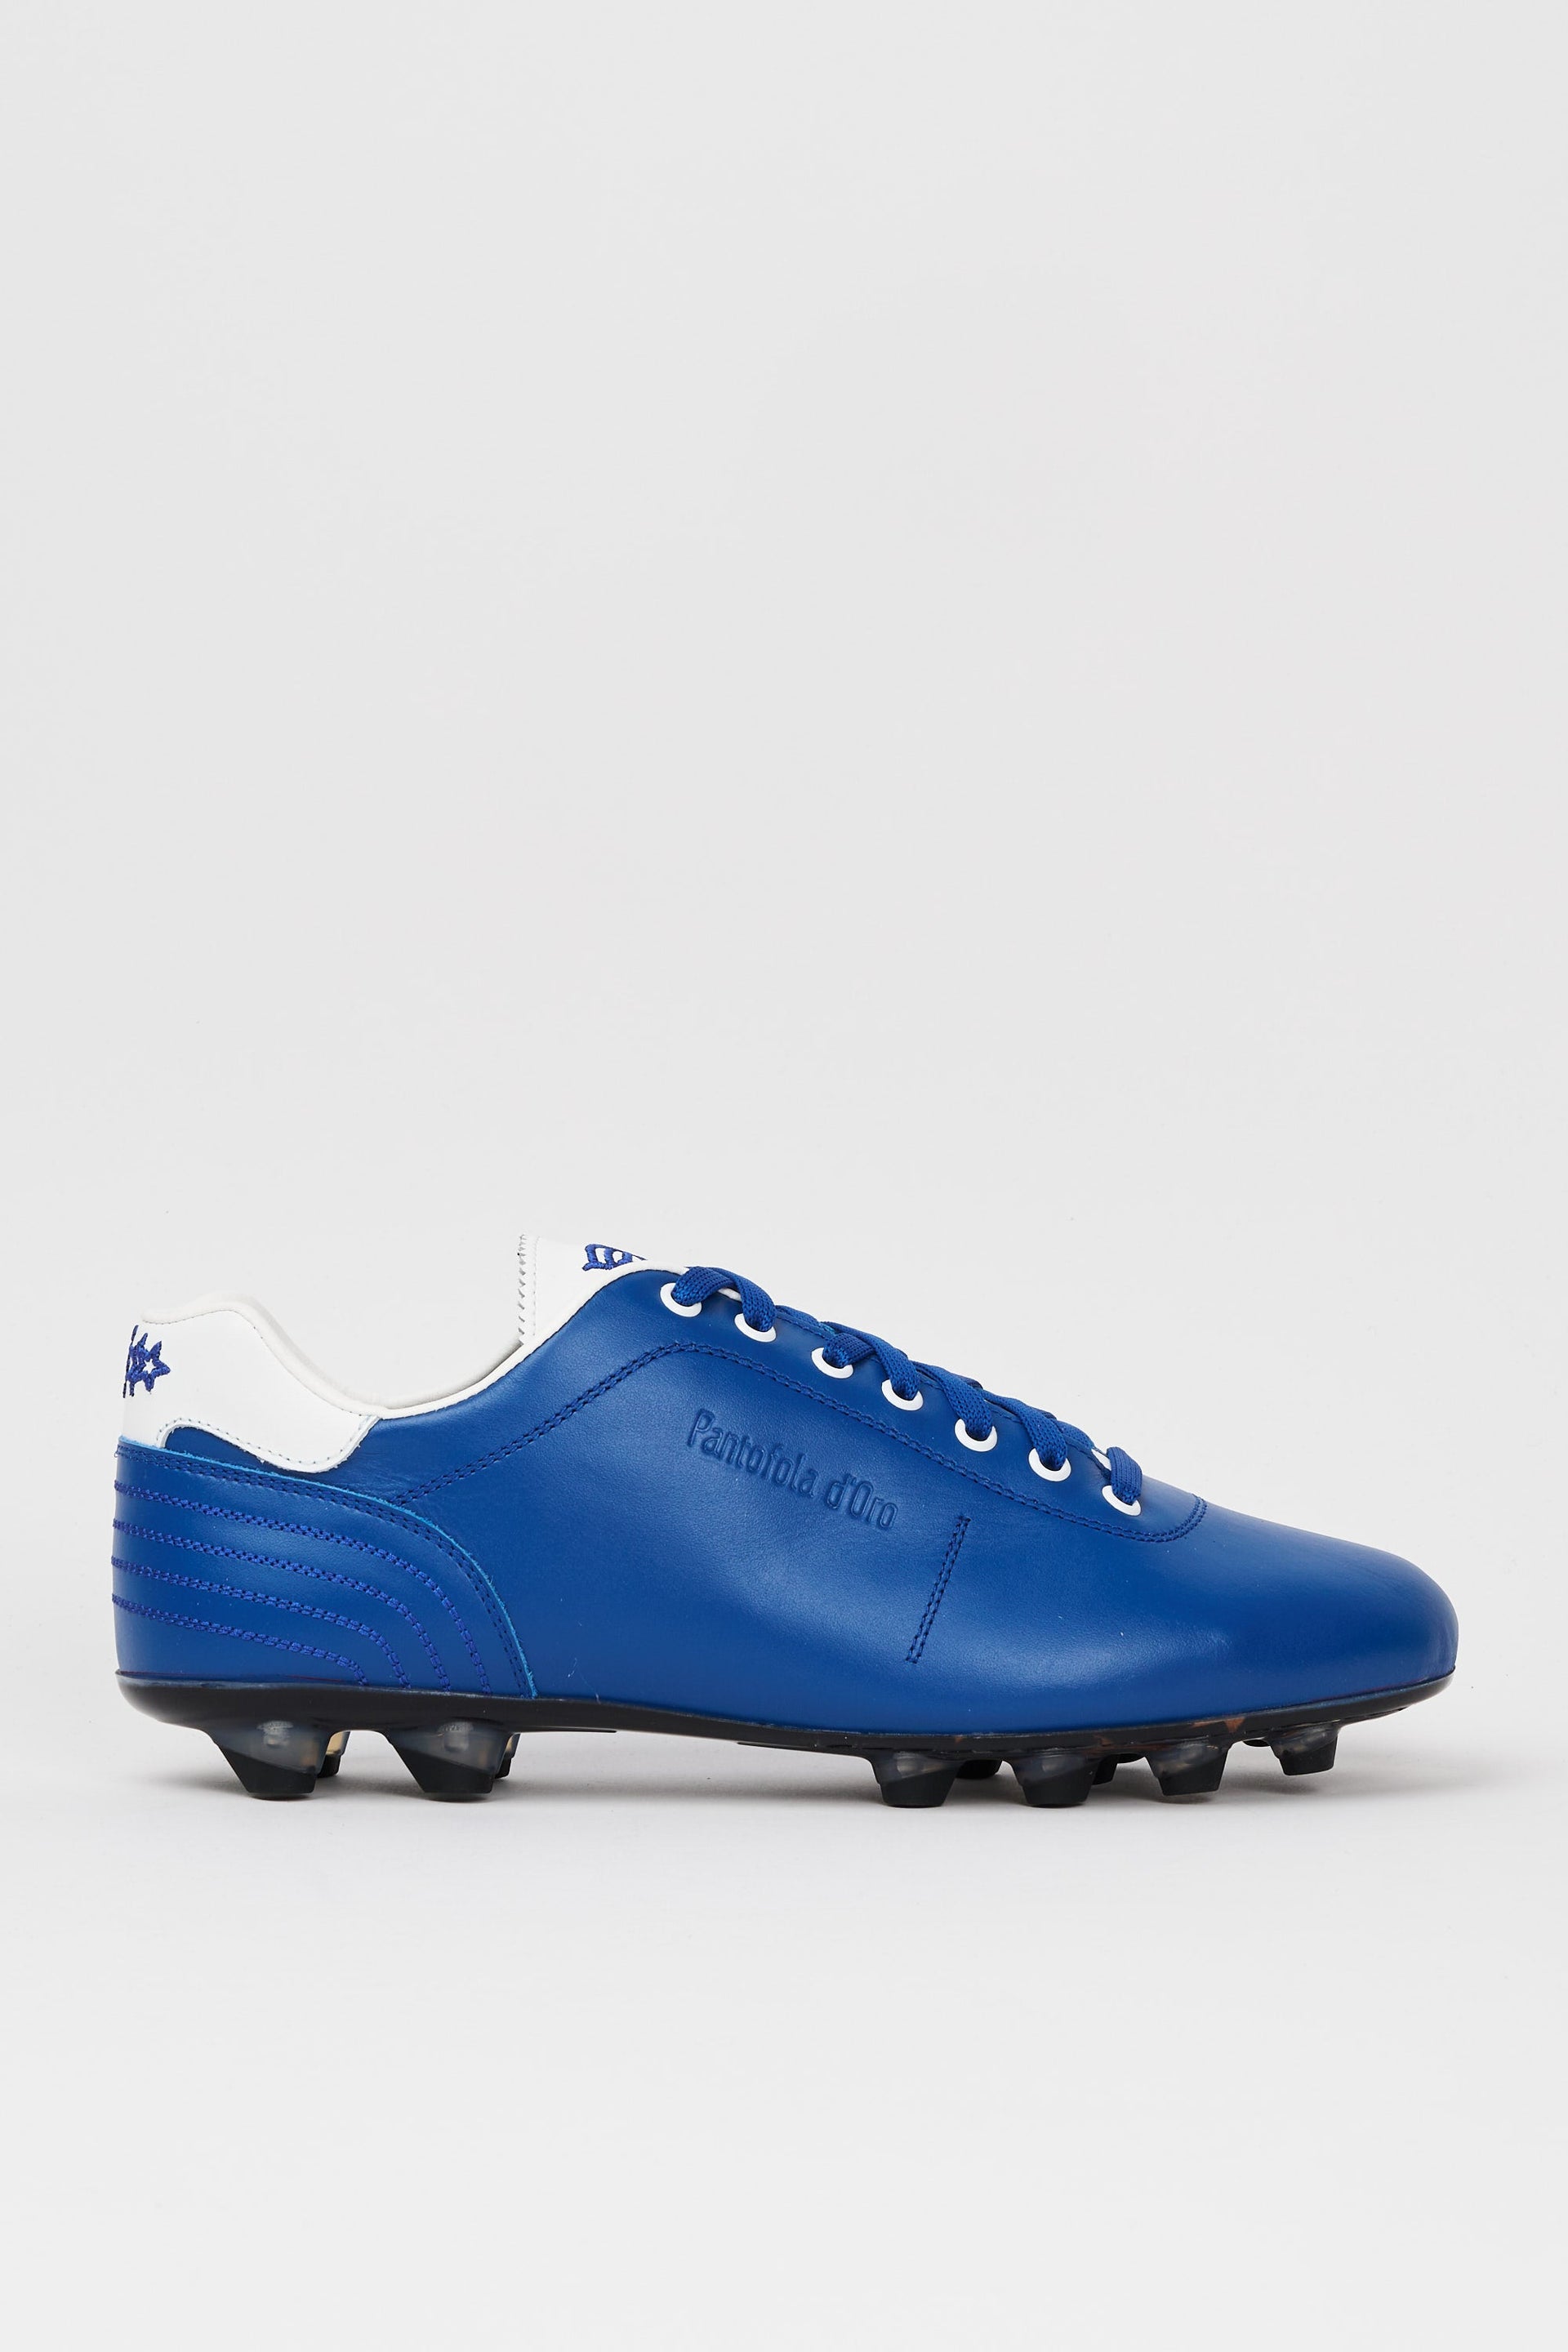 Scarpe da calcio in pelle Lazzarini in pelle blu limited edition Glasgow Rangers